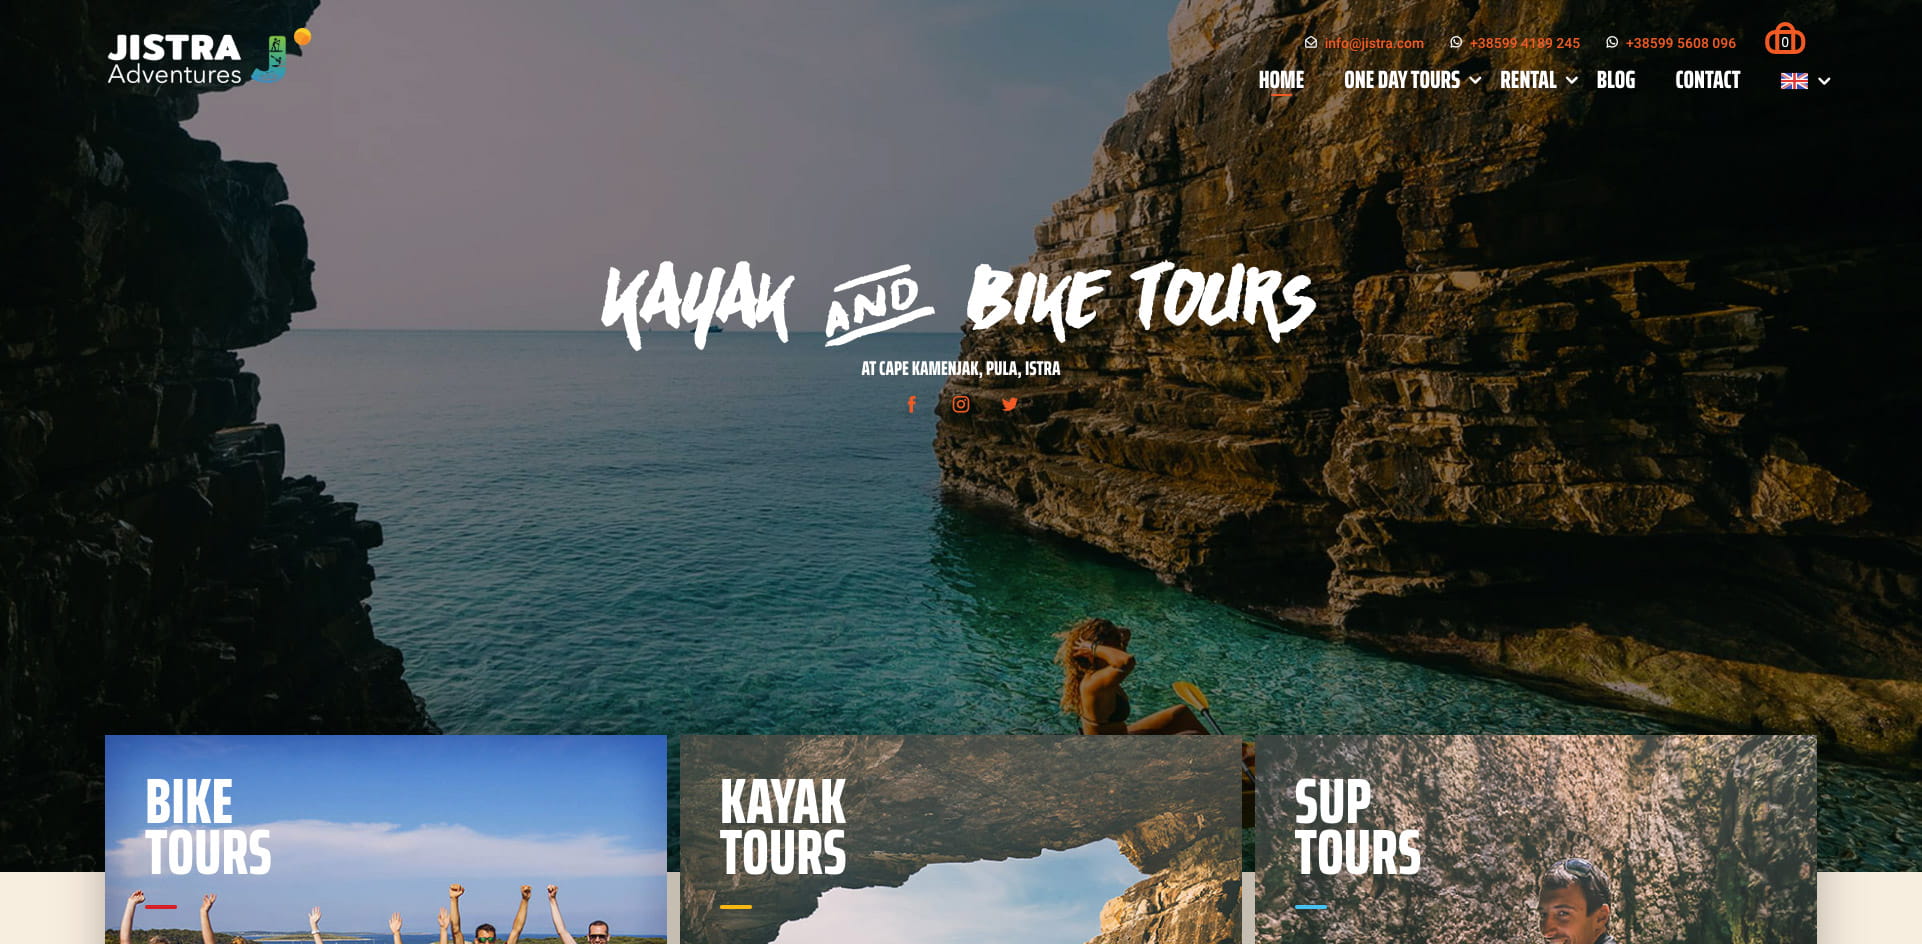 Dizajn i izrada internet stranice za turizam - Jistra Adventures pregled kategorija na naslovnici